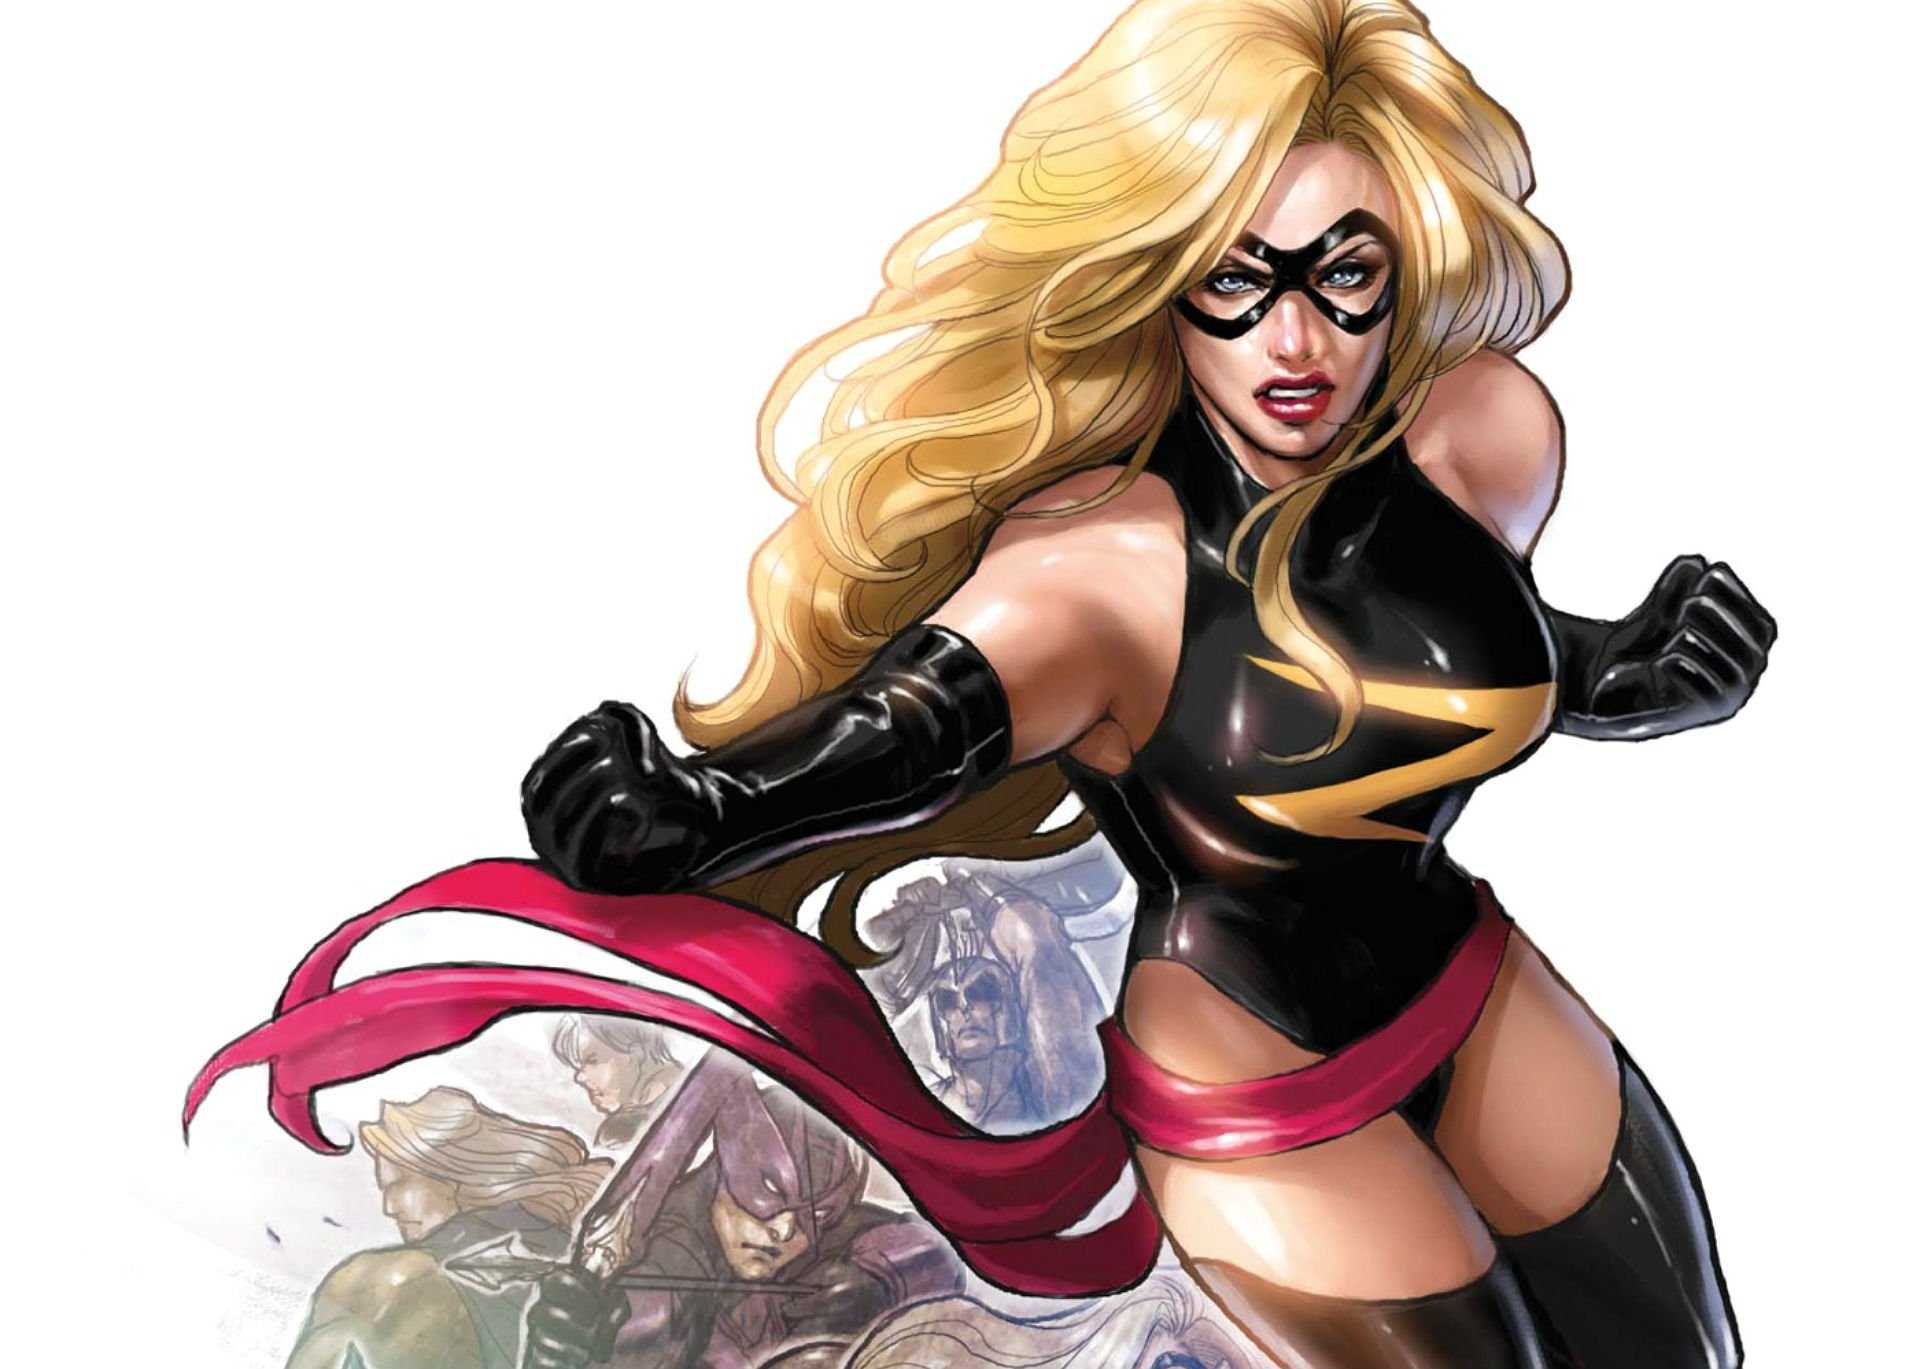 34 Hot Pictures Of Ms. Marvel Are Splendidly Splendiferous | Best Of Comic Books